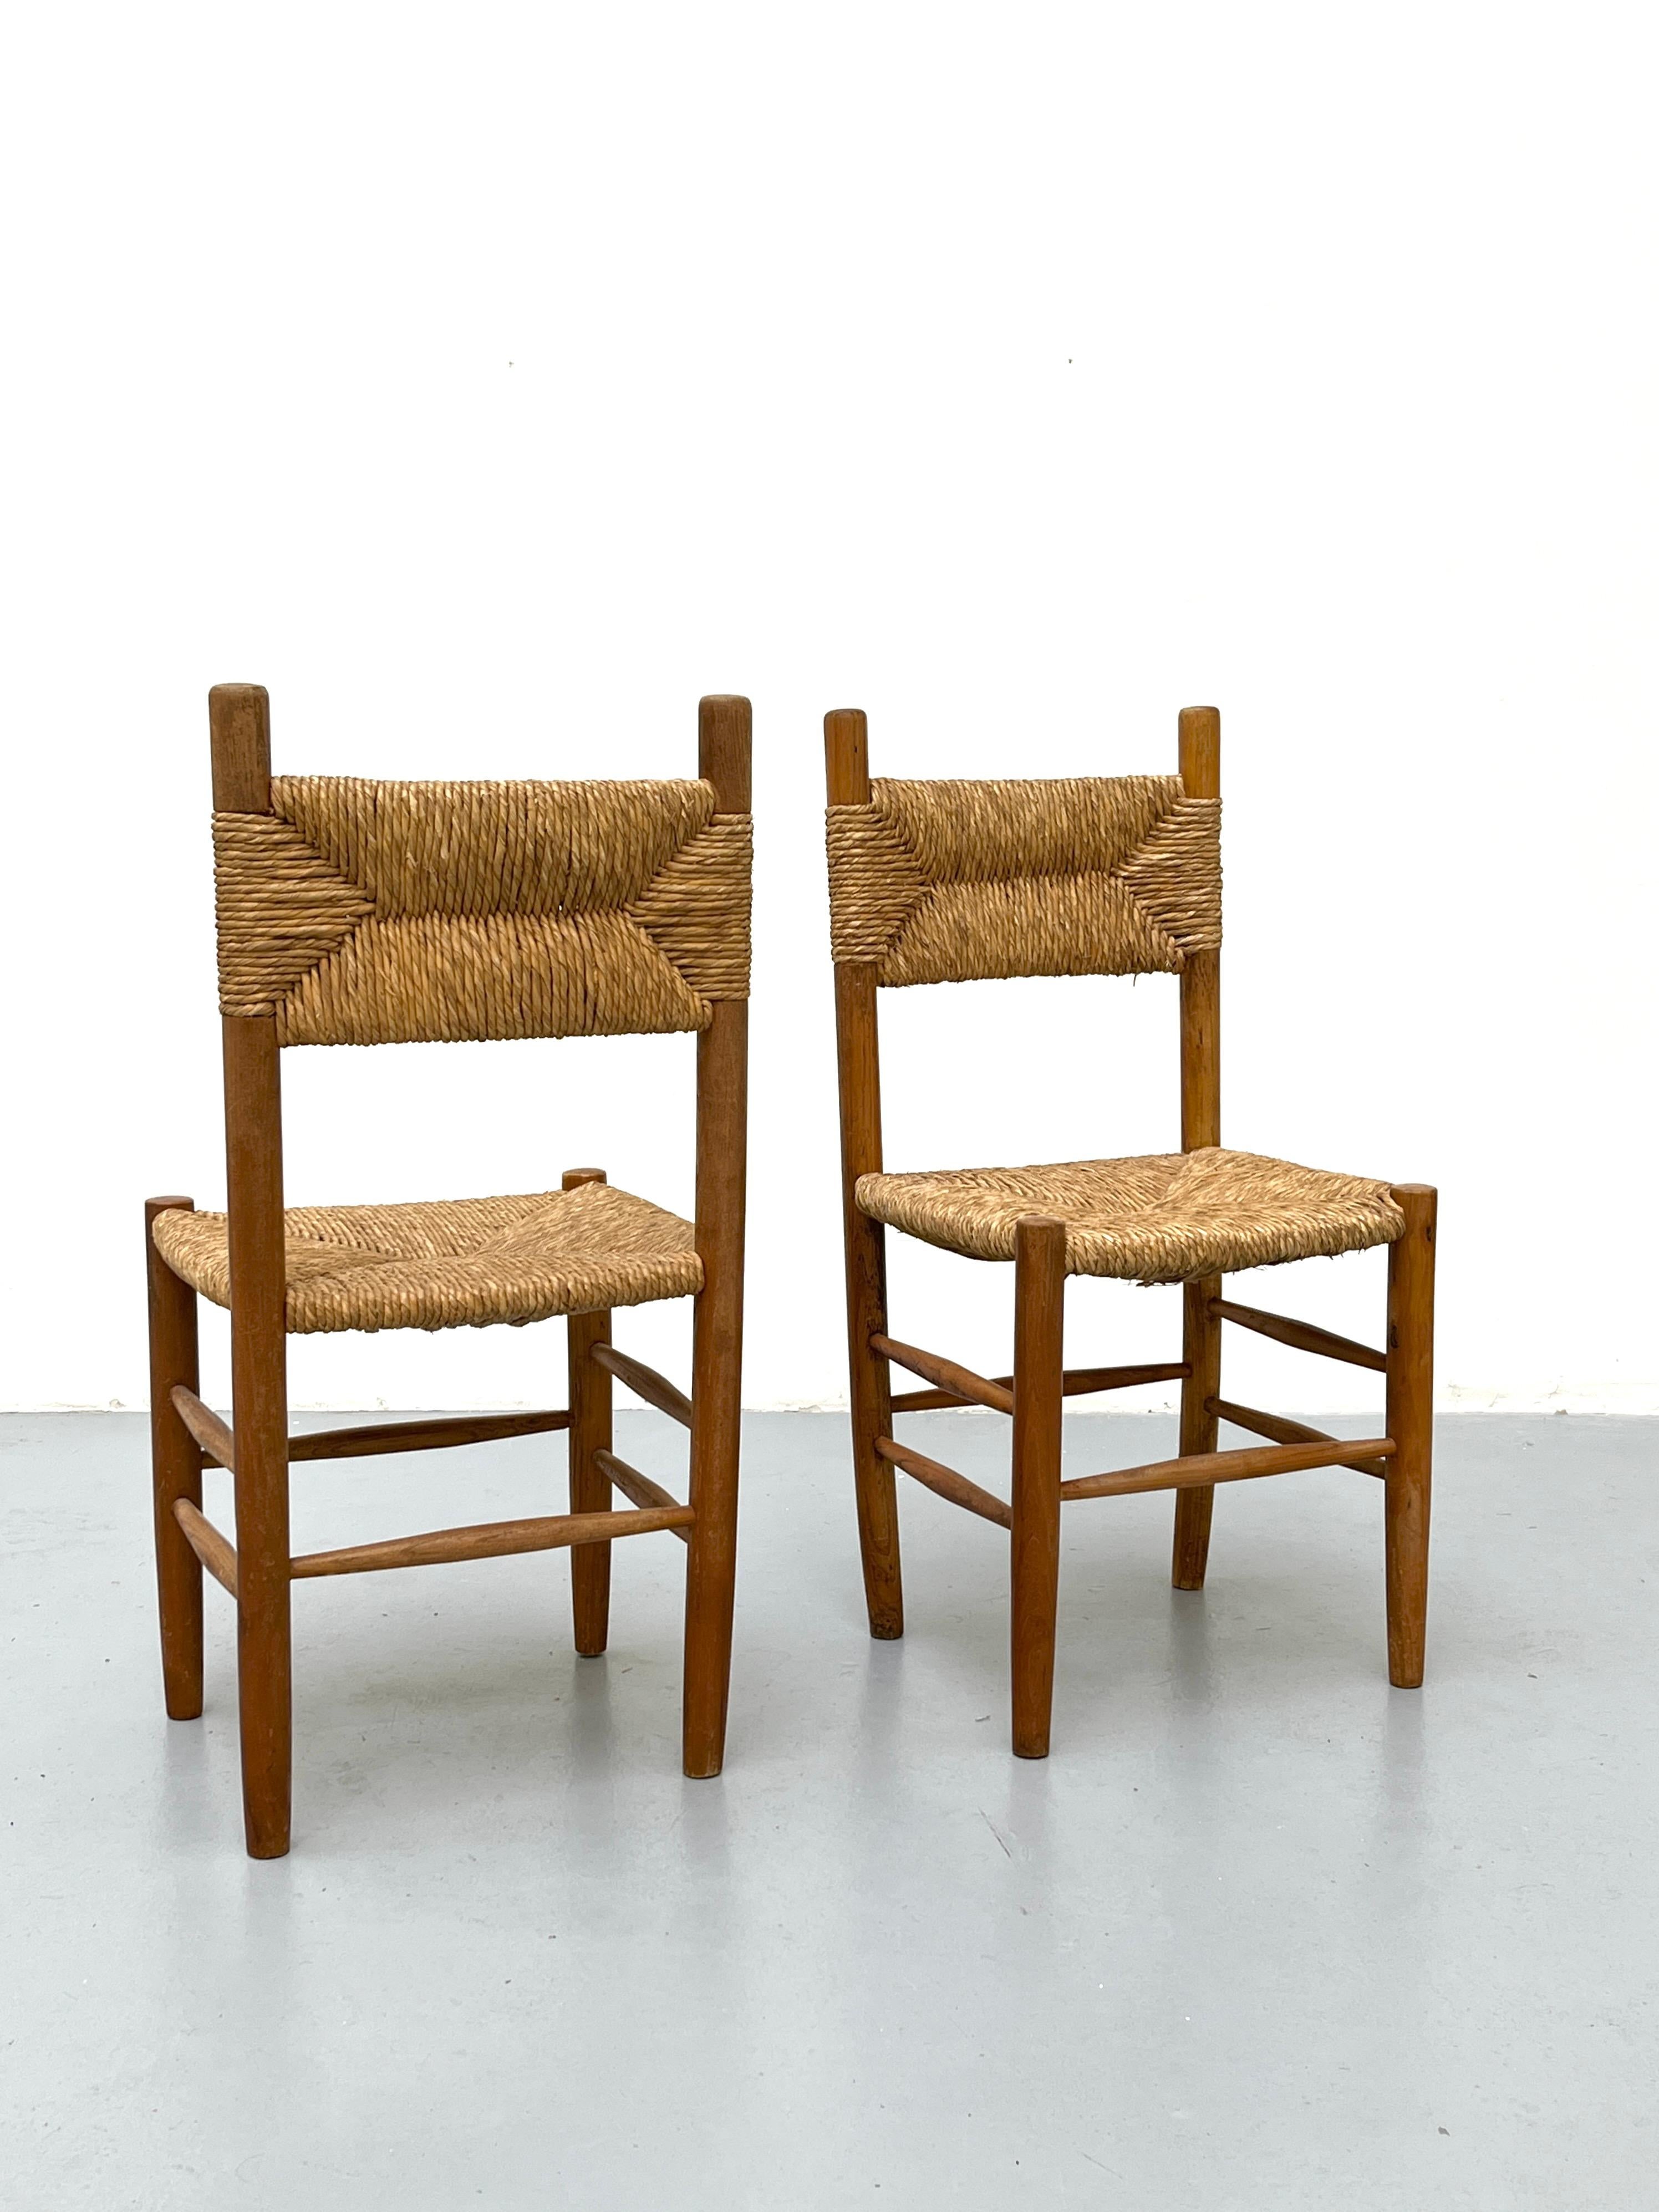 Paar Sessel aus Buchenholz mit Strohsitz im Stil von Charlotte Perriand

Charlotte Perriand ließ sich von den japanischen Reisstrohmustern inspirieren. Sie verwendet das Aussehen des Mino, eines Regenumhangs, für ihre gewebten Kreationen wie die